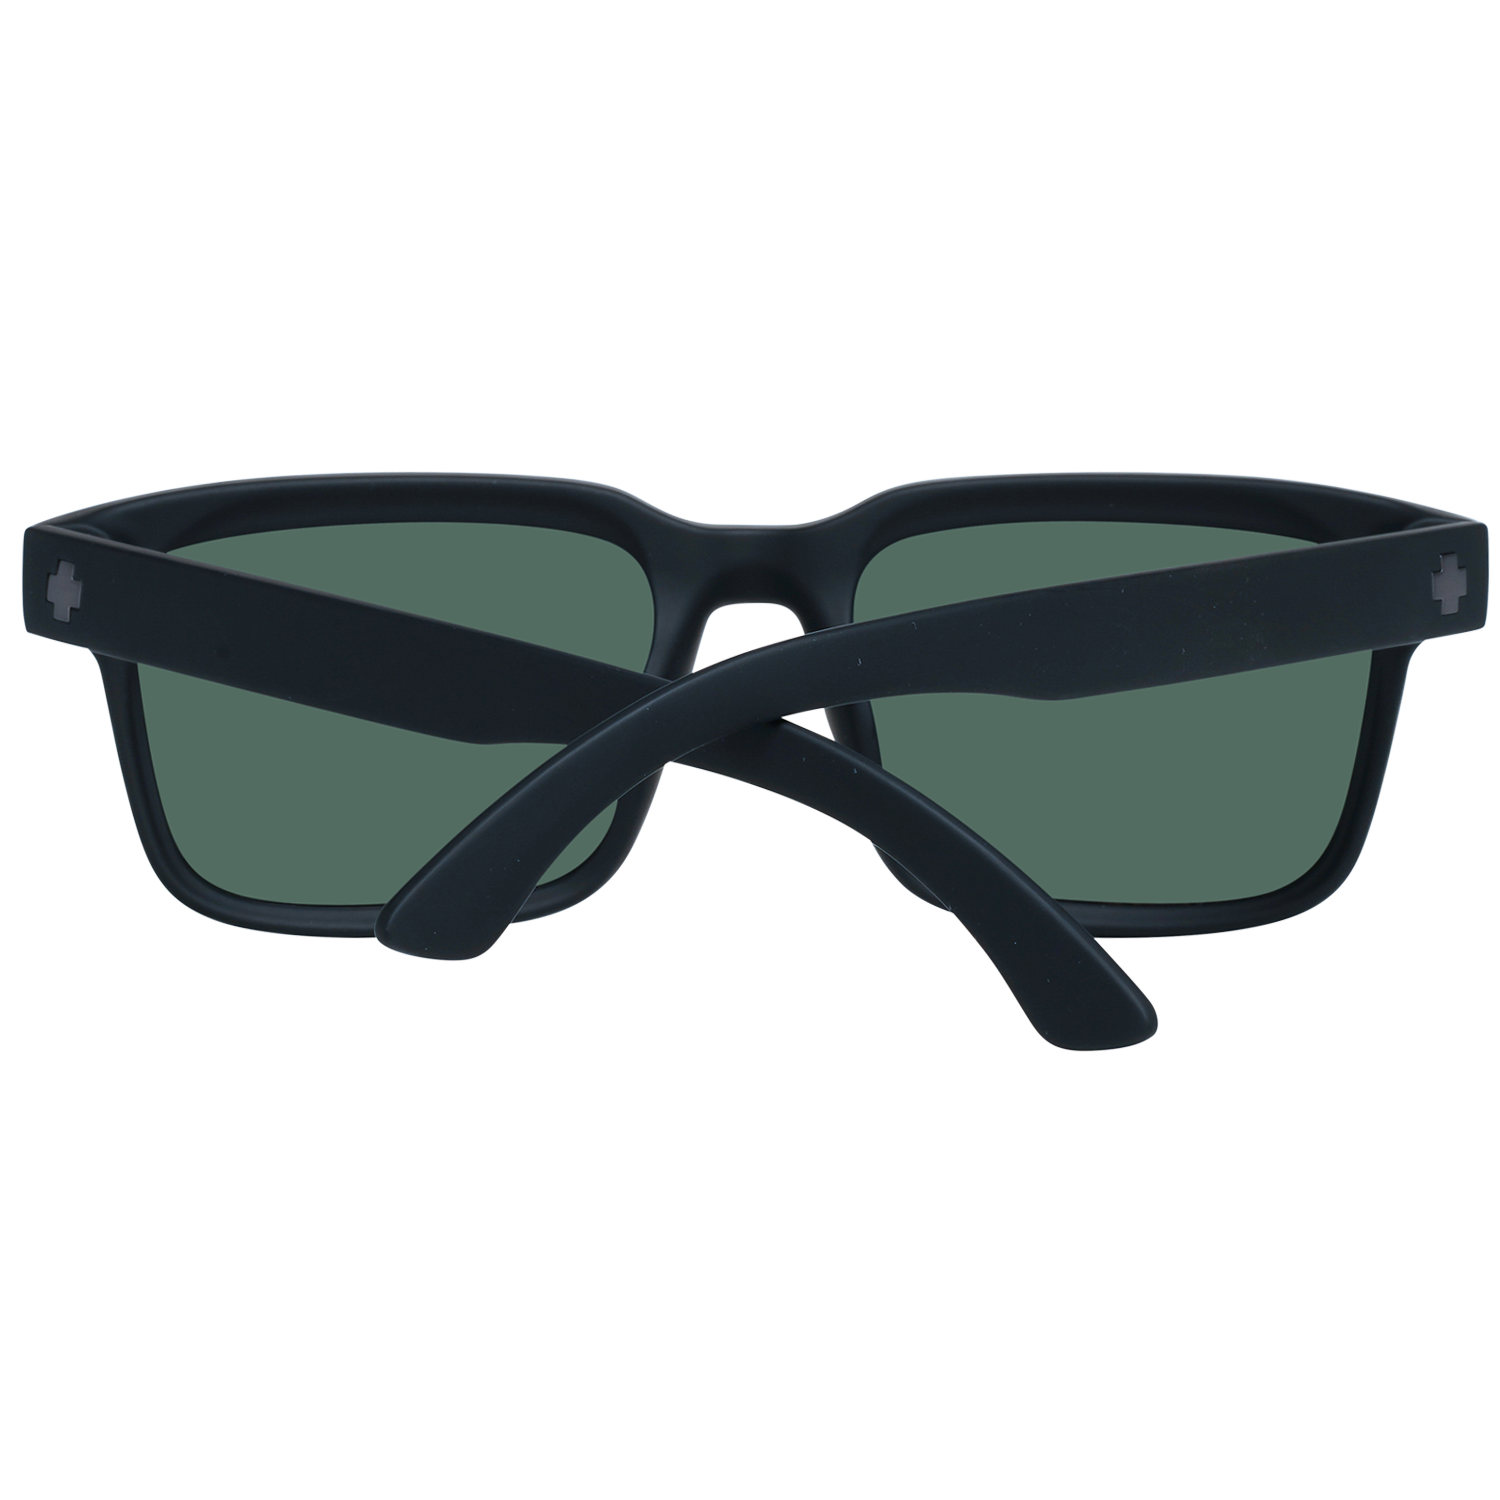 Spy Sunglasses Spy Sunglasses 673520374864 Helm 2 57 Eyeglasses Eyewear UK USA Australia 